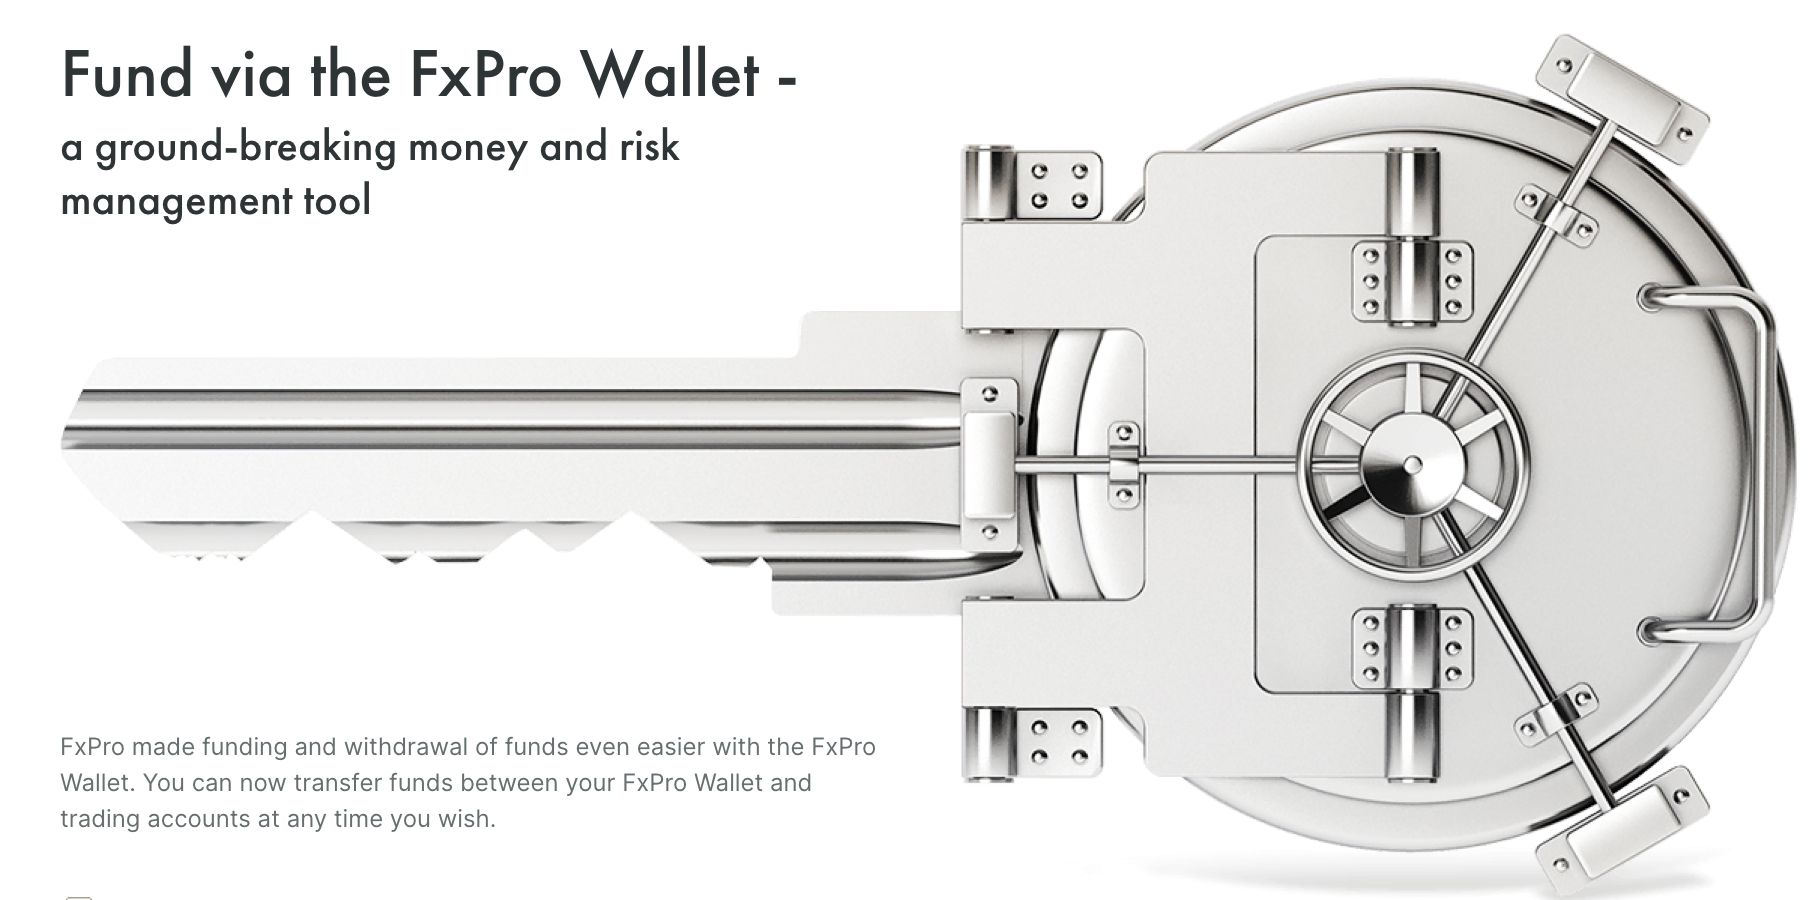 FX pro size özel bir cüzdan özelliği sunar